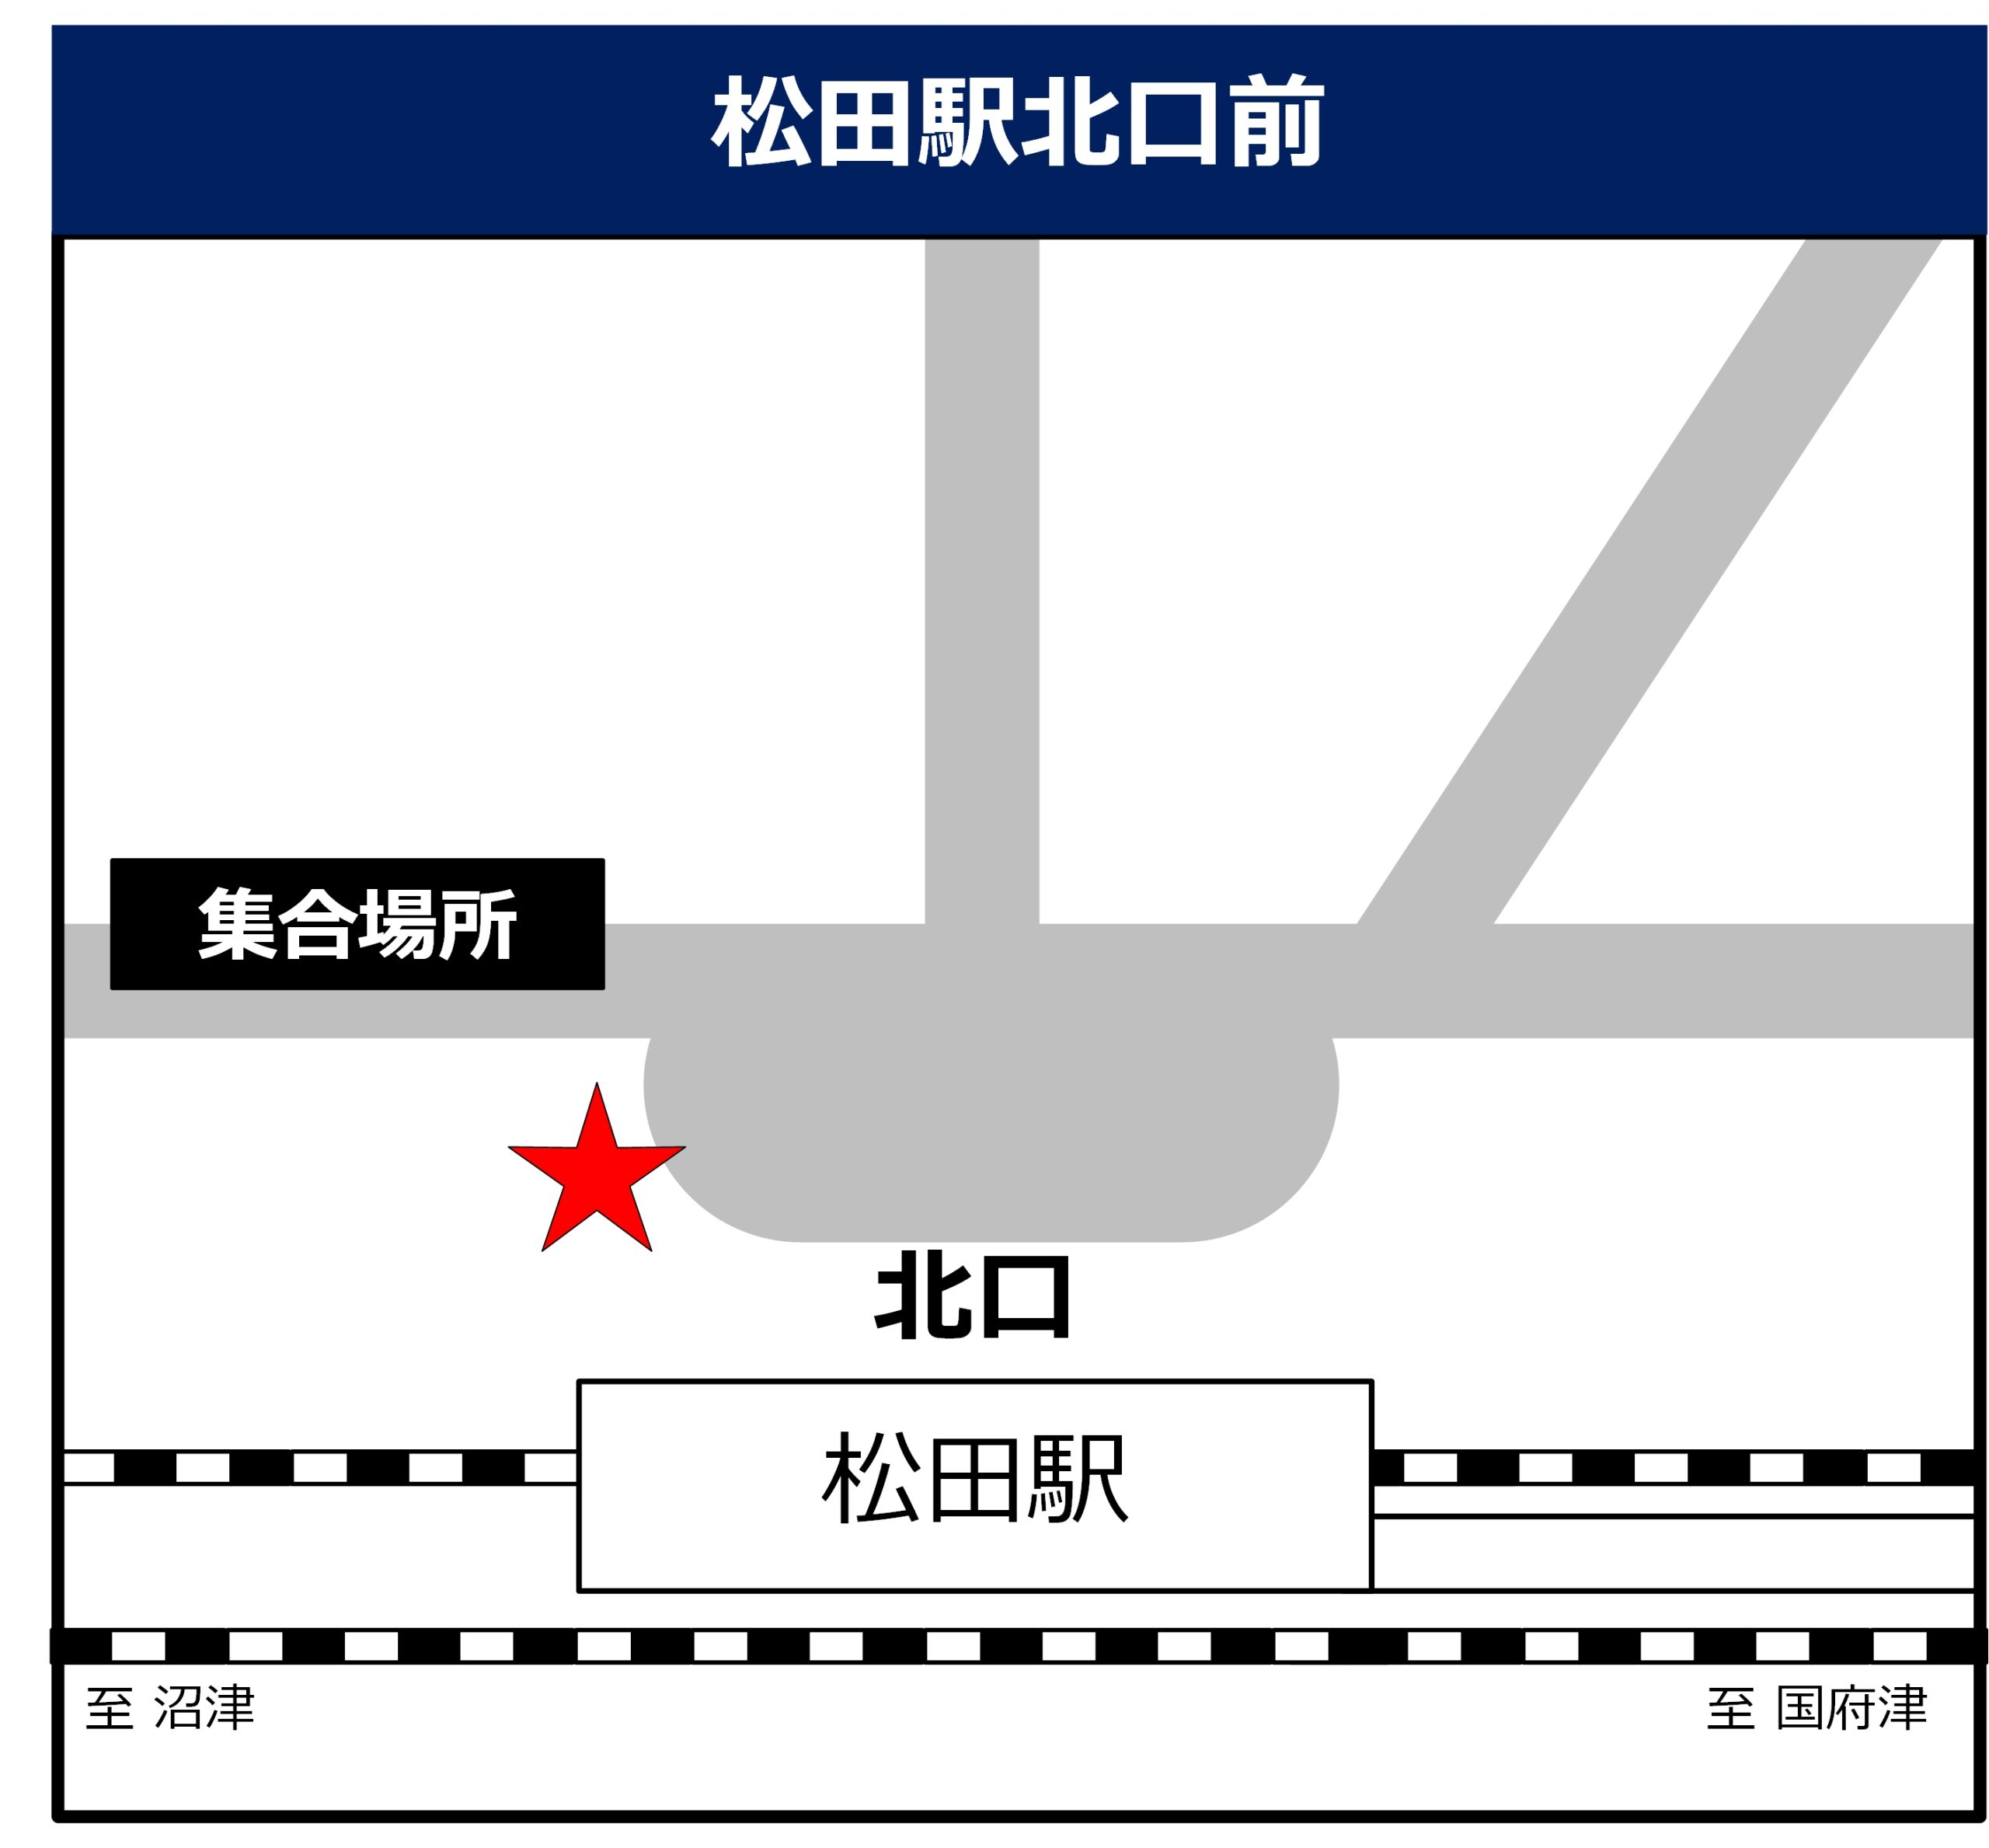 松田駅北口 前の地図